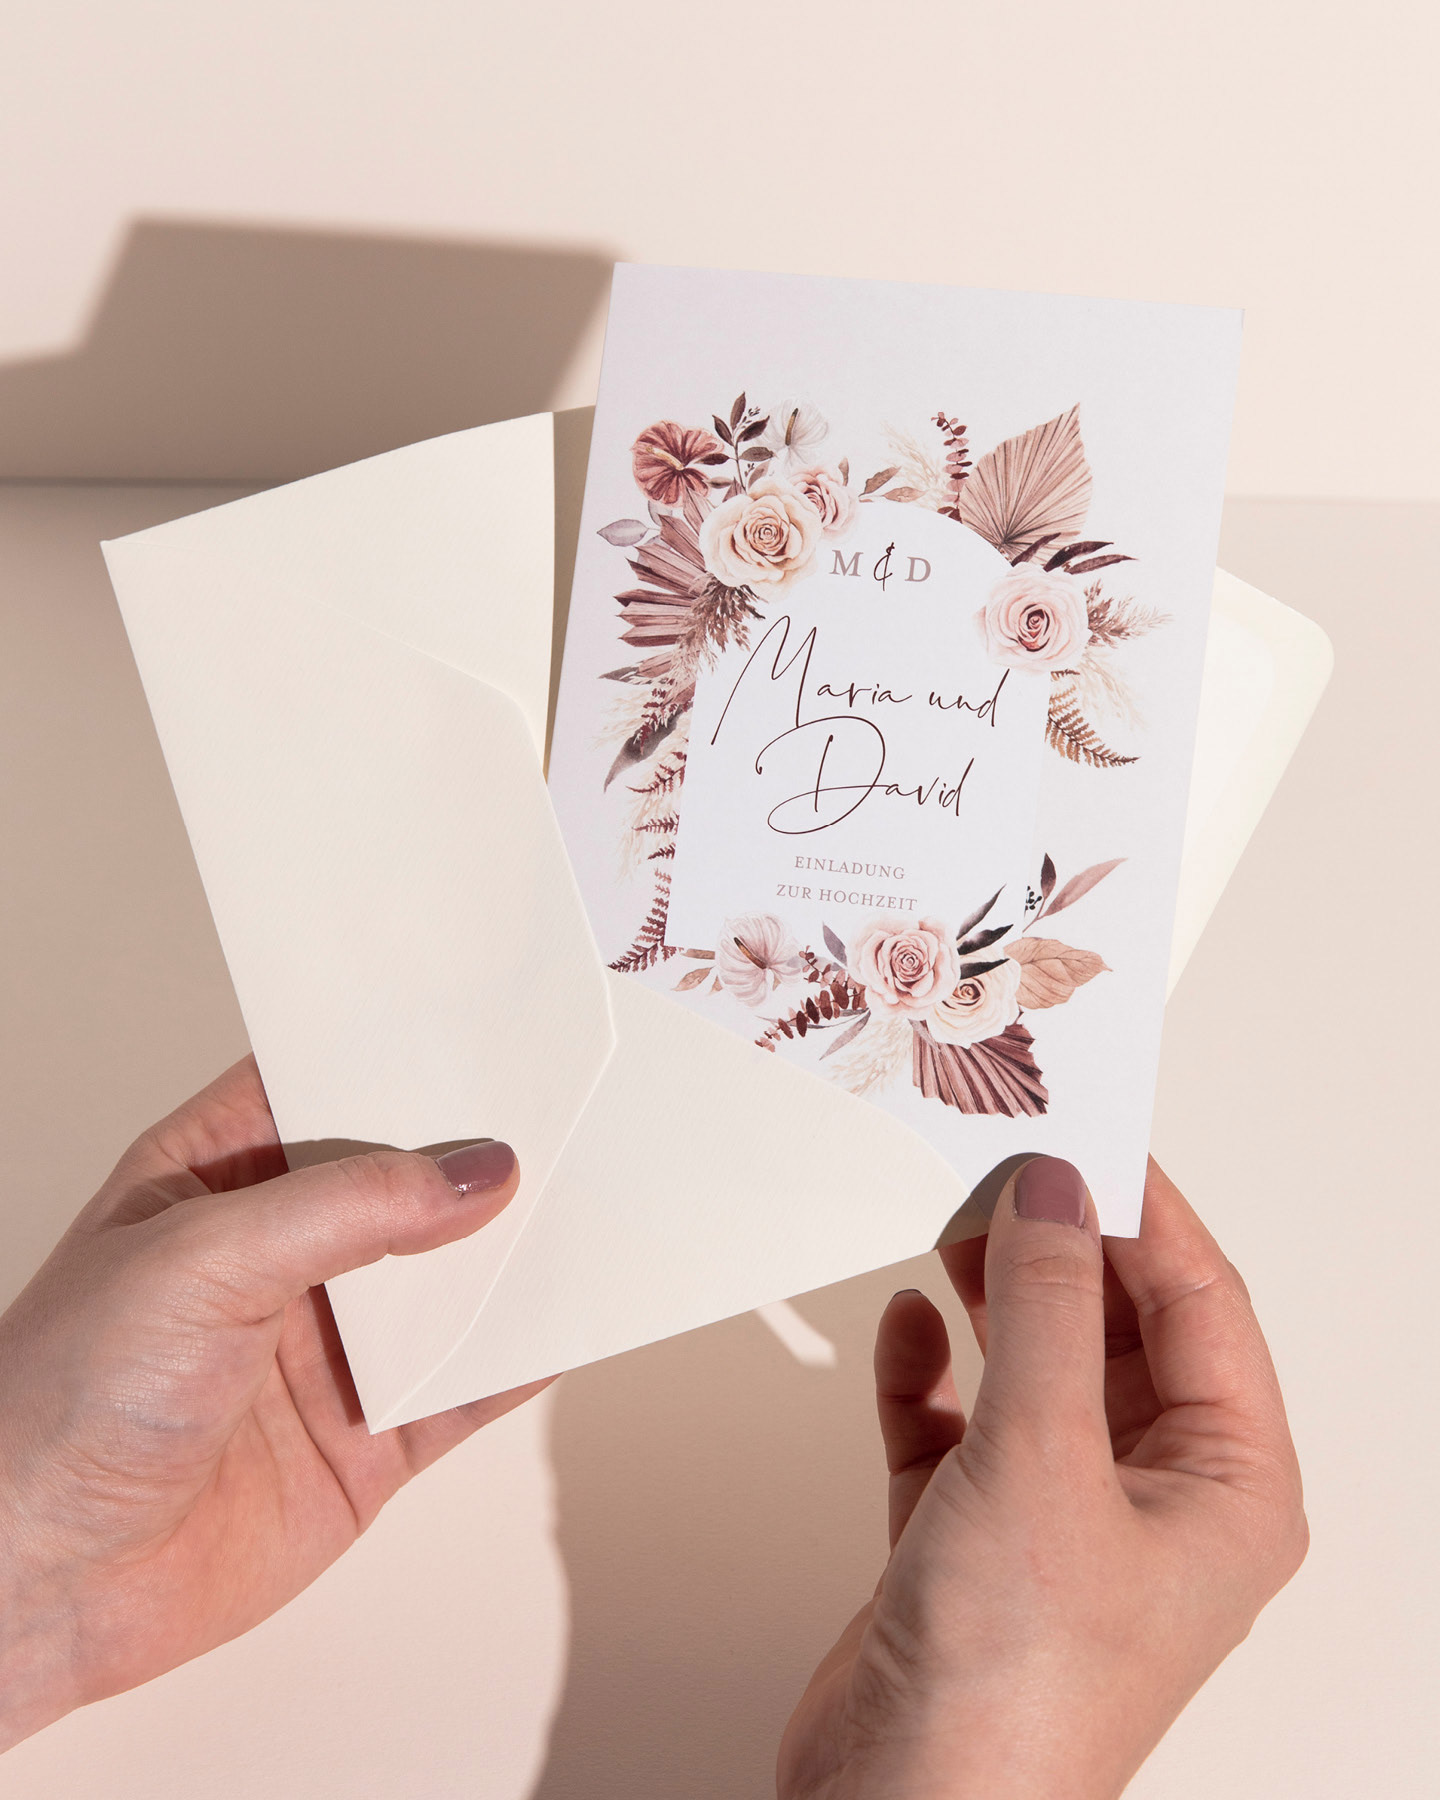 Einladung mit Trockenblumen Illustration wird aus Umschlag genommen.